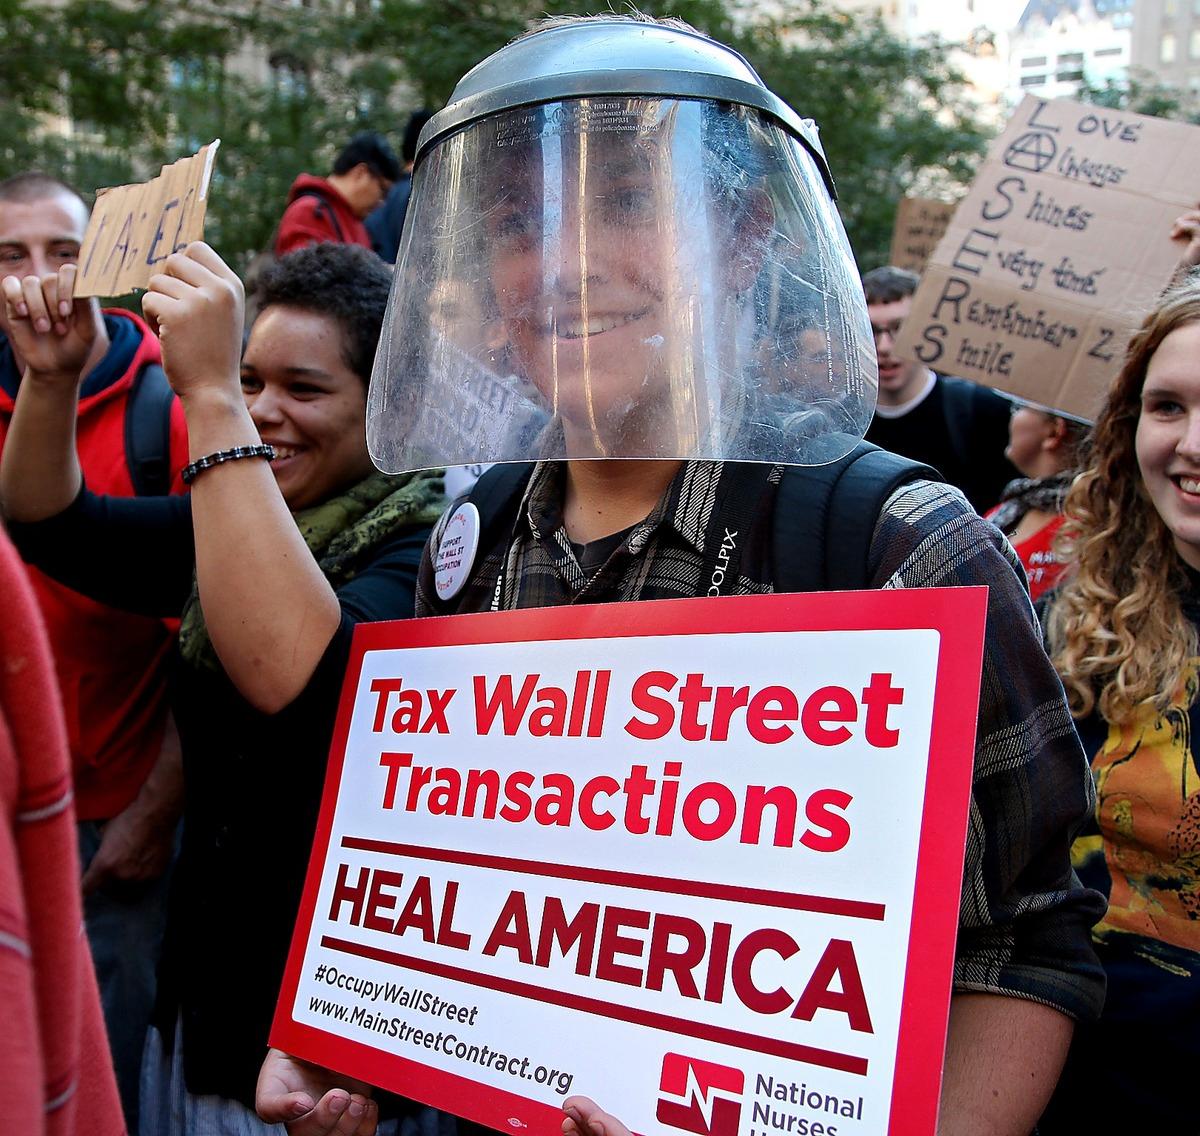 GODA KRAFTER Även om man inte enats om några specifika krav står det klart vilken sorts förändringar Occupy Wall Street vill ha. Nu är det intellektuella och politiker som ska fylla i detaljerna, skriver Paul Krugman.